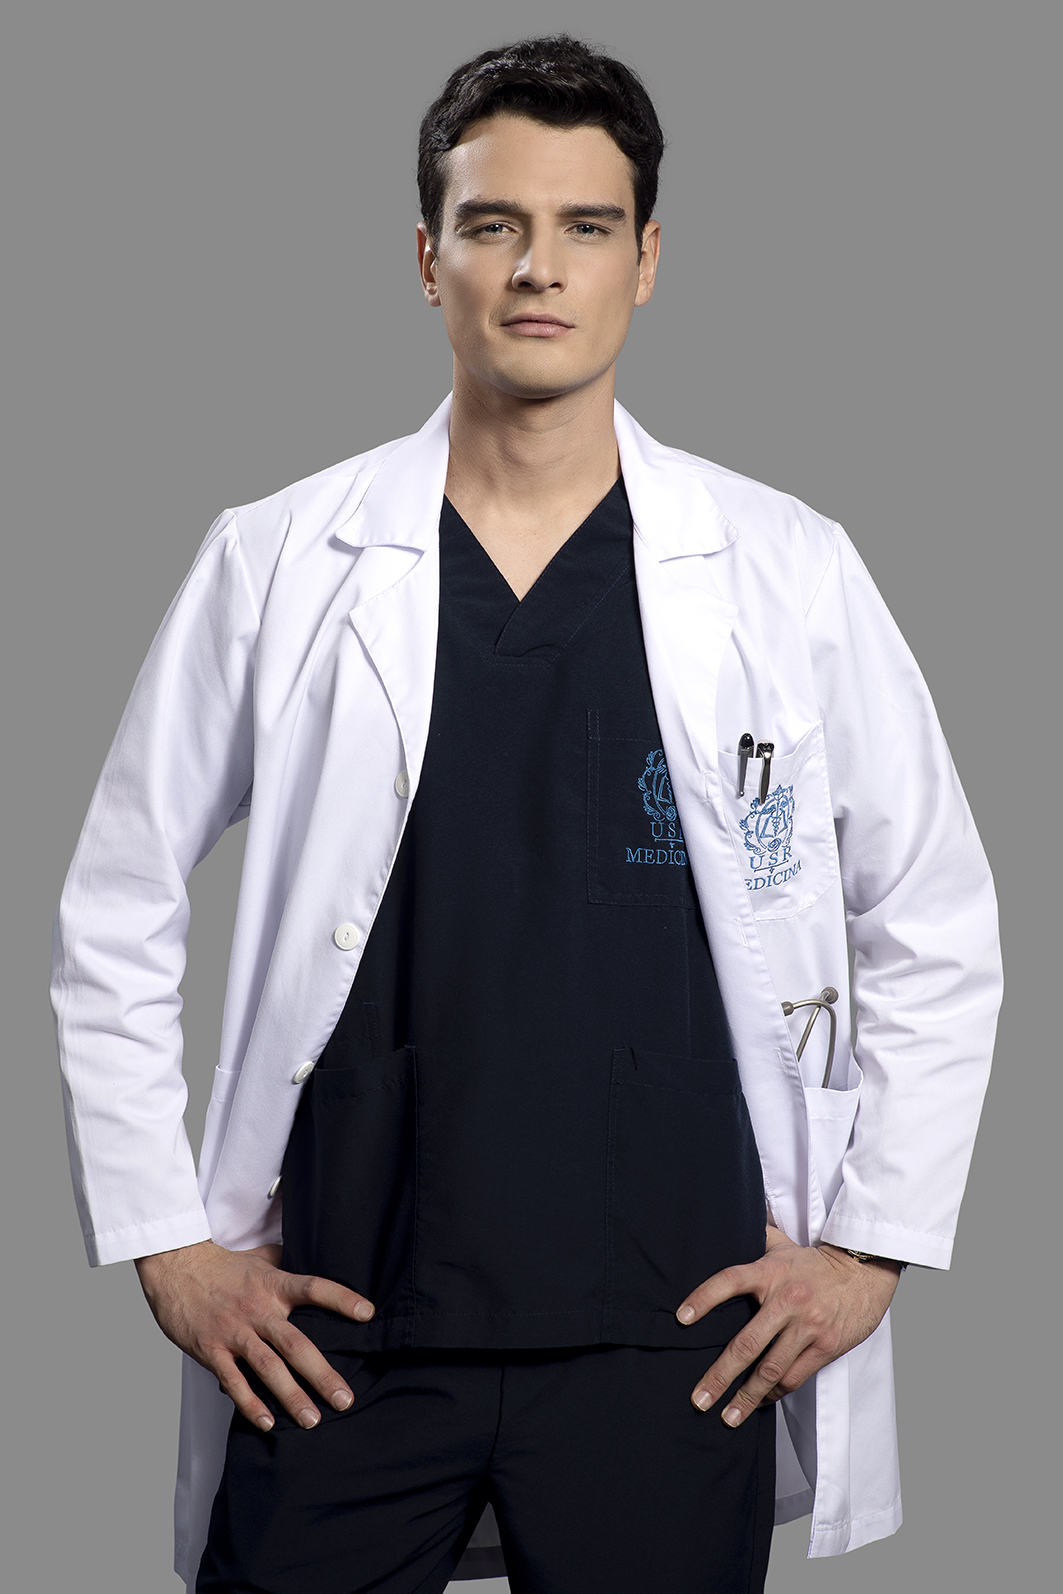 Tercera temporada de Enfermeras: nuevos actores y personajes